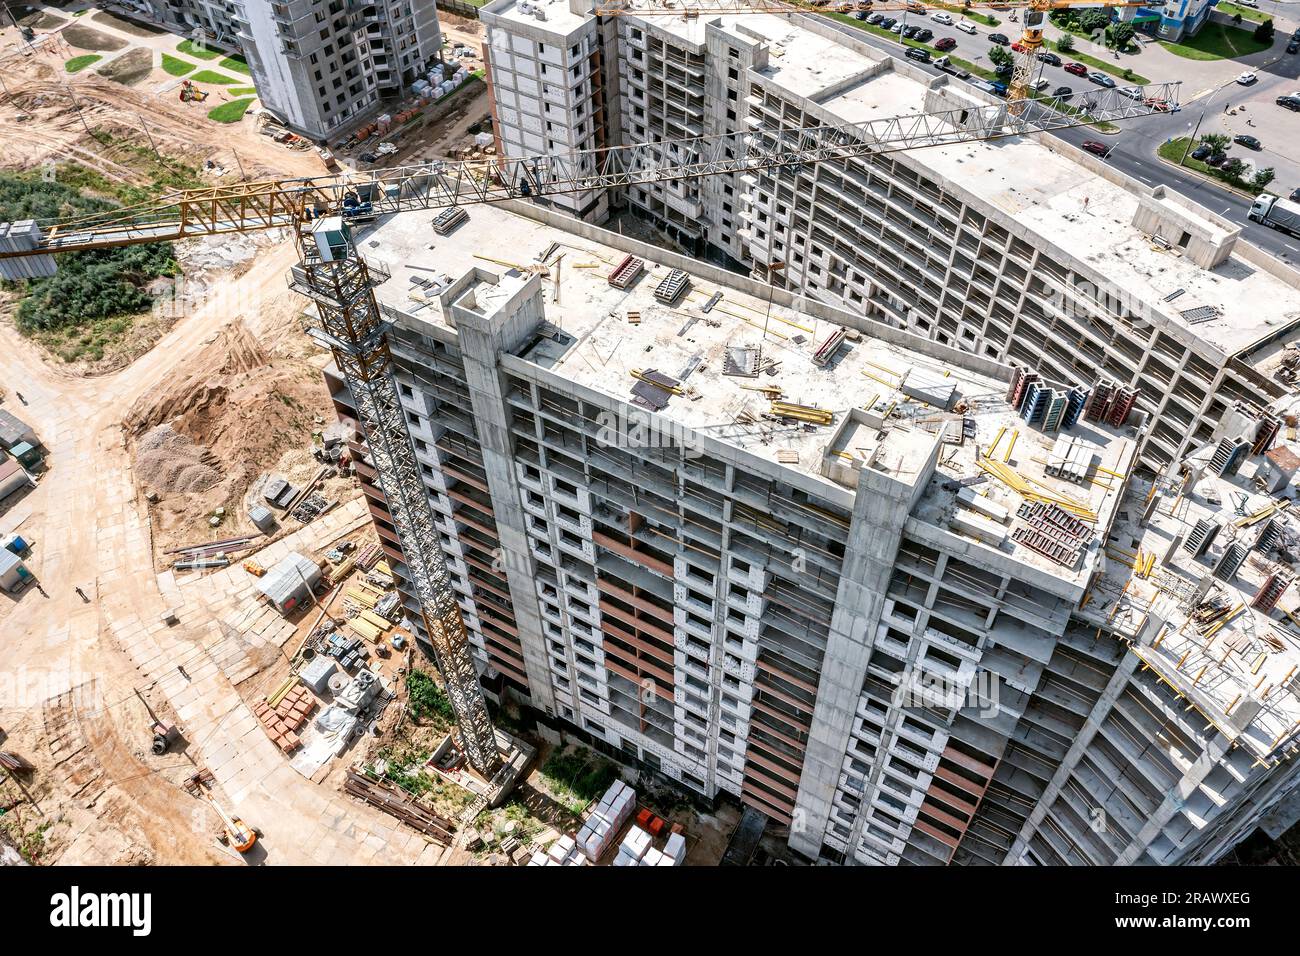 cantiere affollato con edificio residenziale in costruzione e gru in funzione. vista aerea con droni. Foto Stock